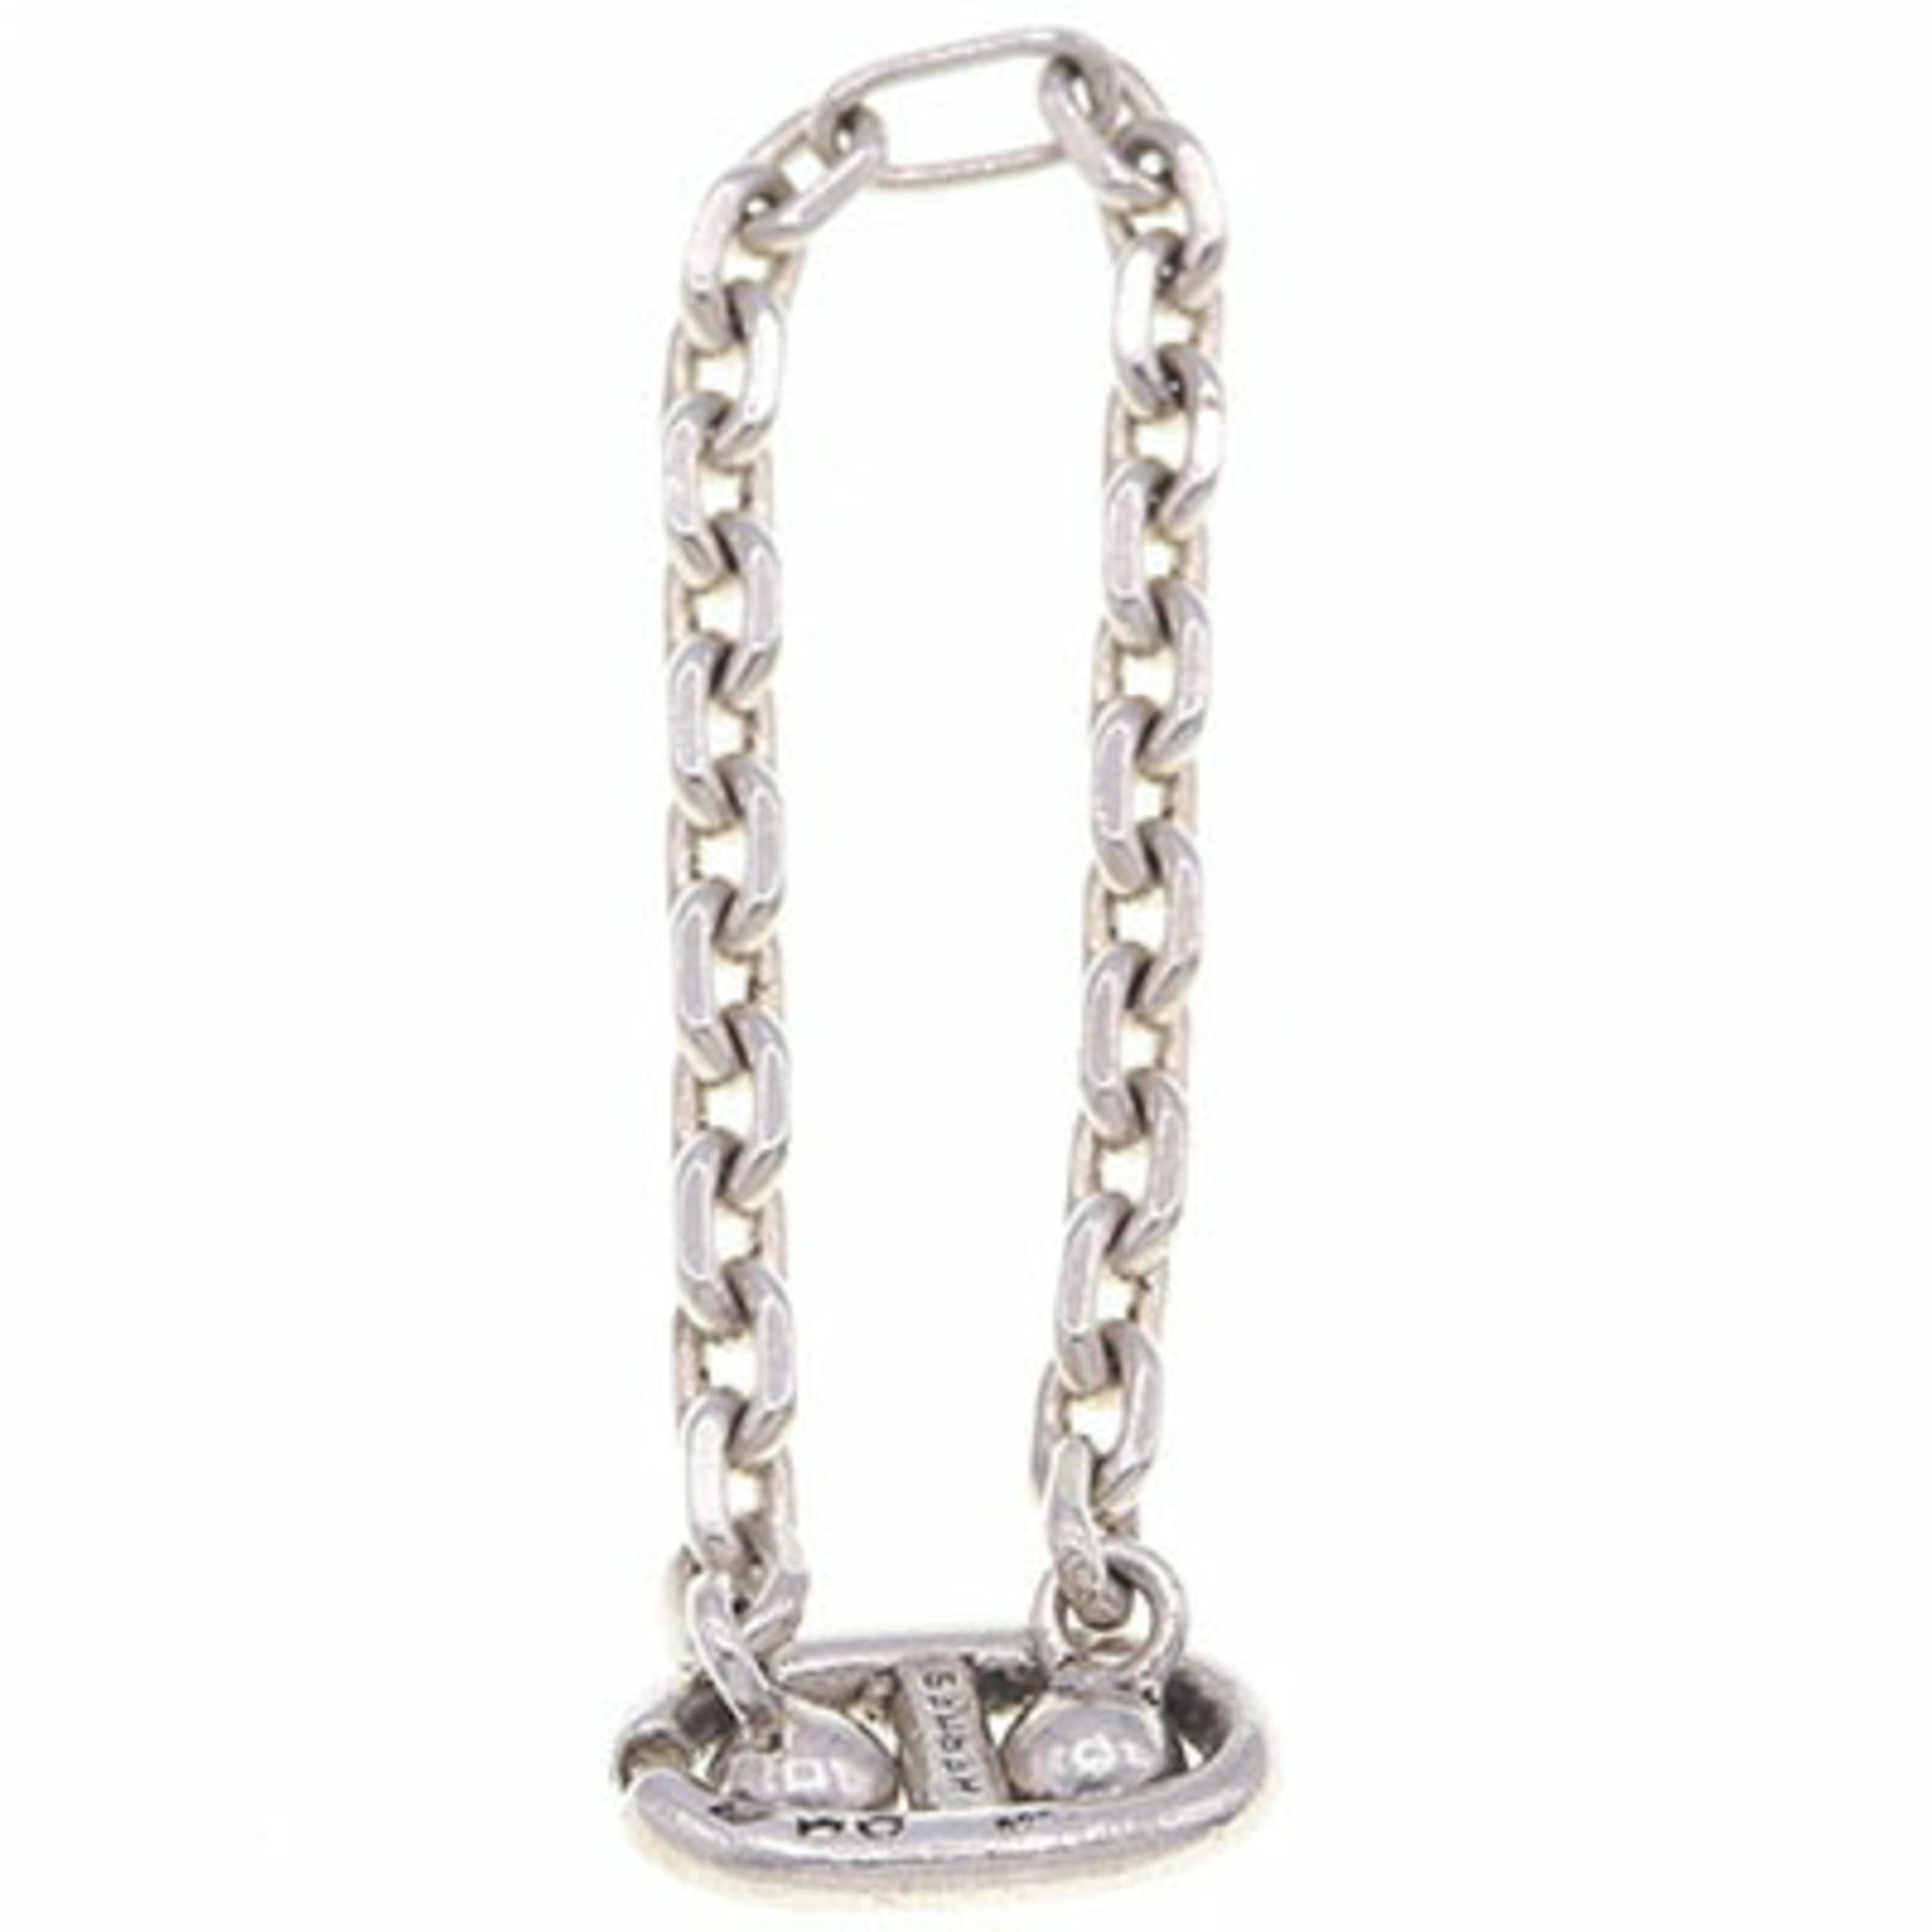 Hermes key holder Shane Dunkle SV sterling silver 925 ring chain bag charm old men's women's HERMES